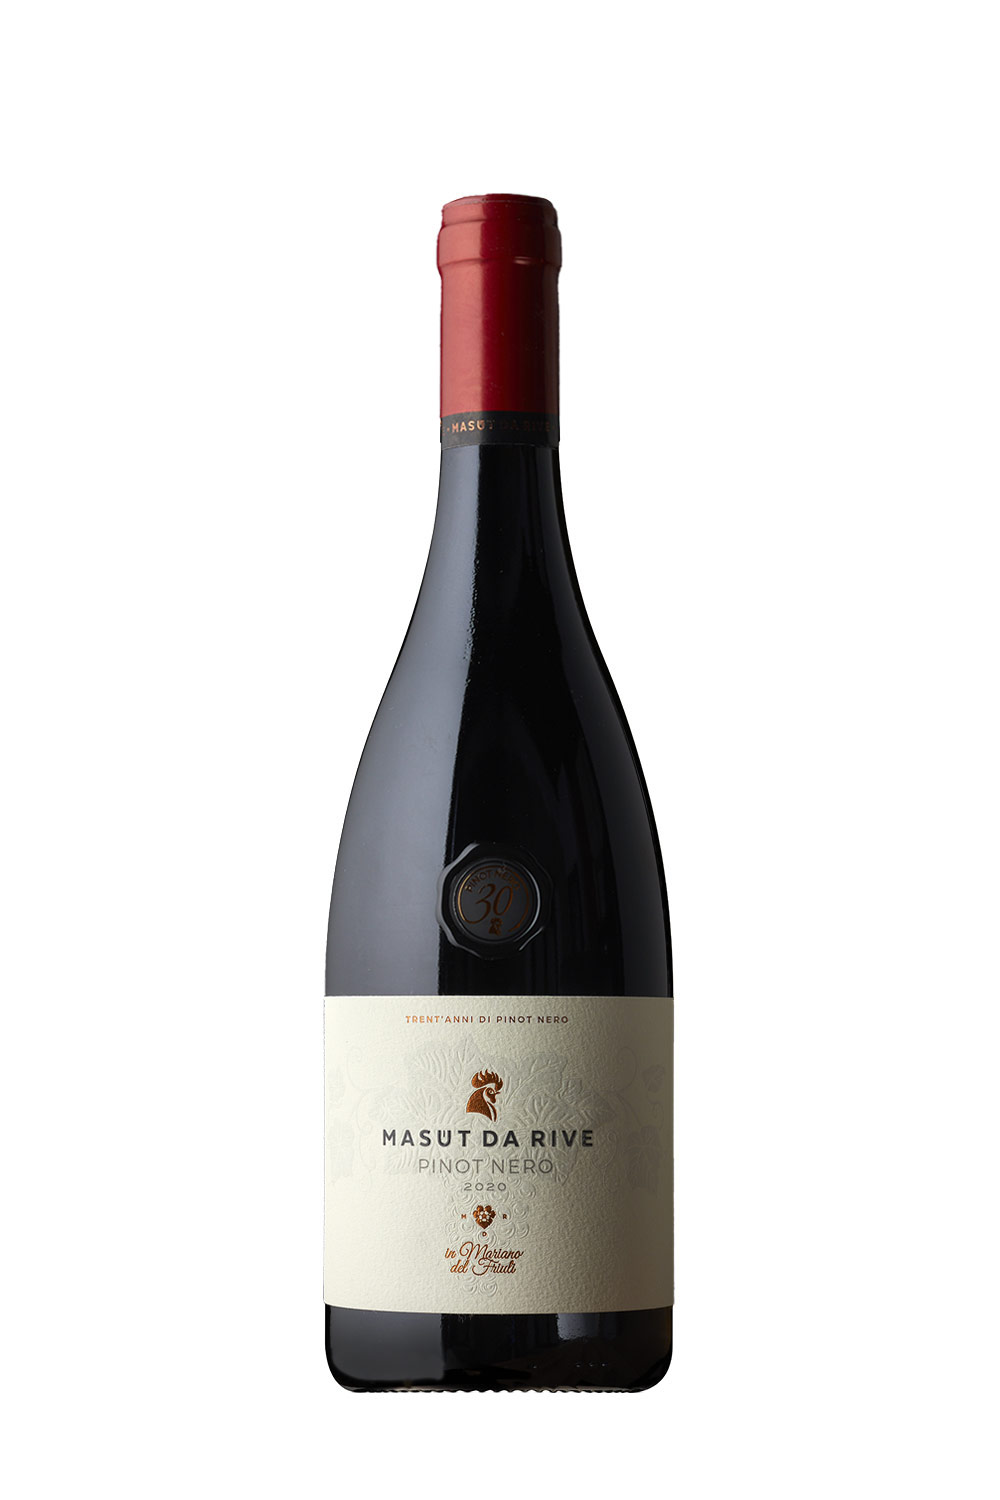 Masut da Rive Pinot Nero 30 Jahre DOC 2020 | Online kaufen bei Senti Vini -  Weine aus Italien | Rotweine